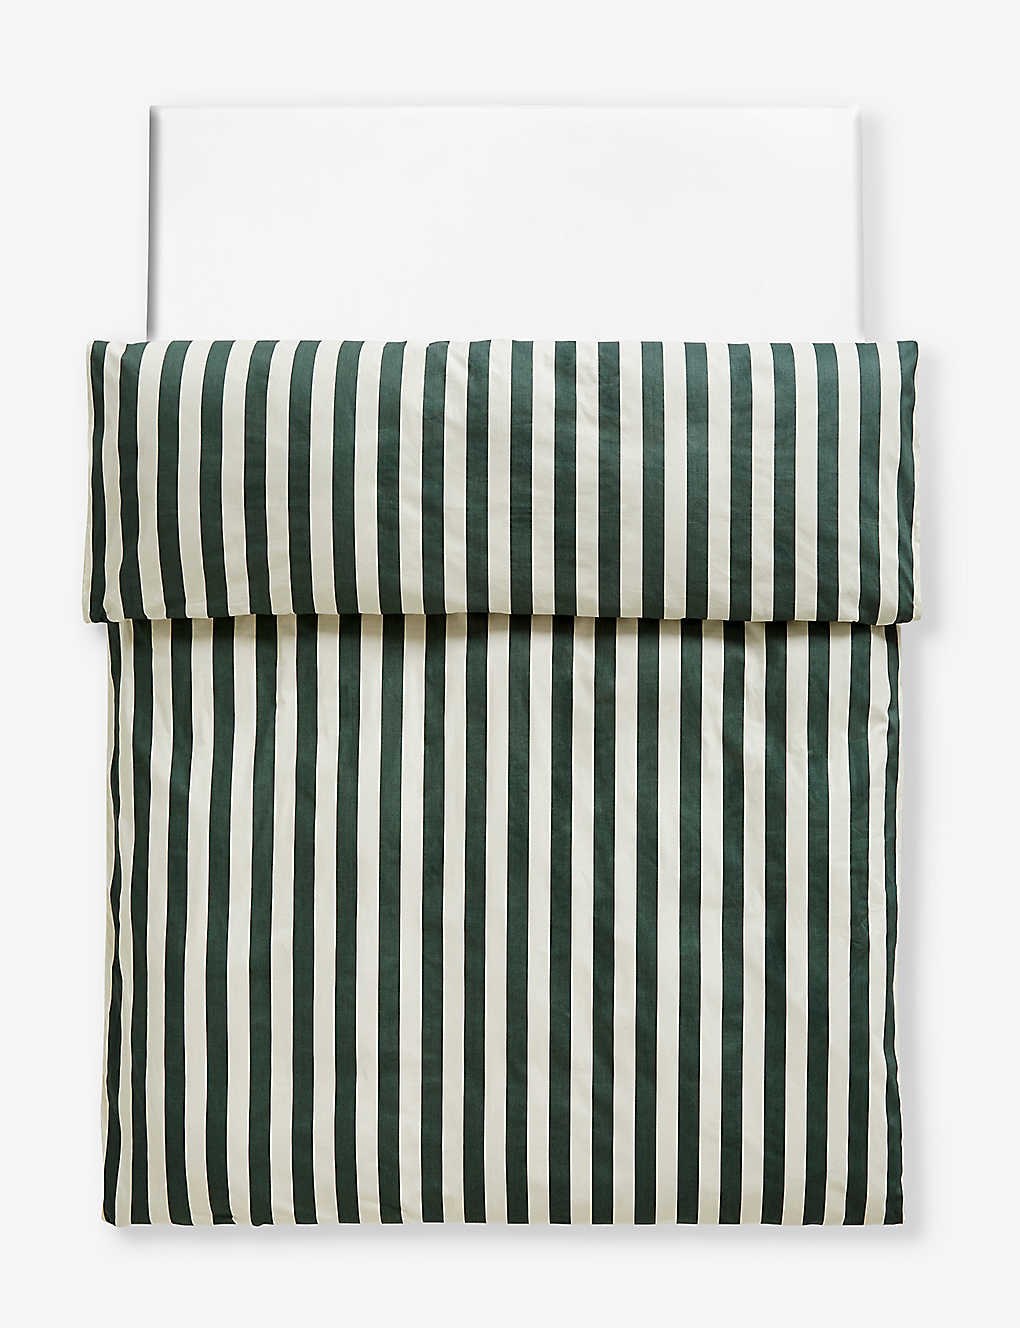 Hay Dark Green Ete Striped Cotton Duvet Cover 200cm X 220cm